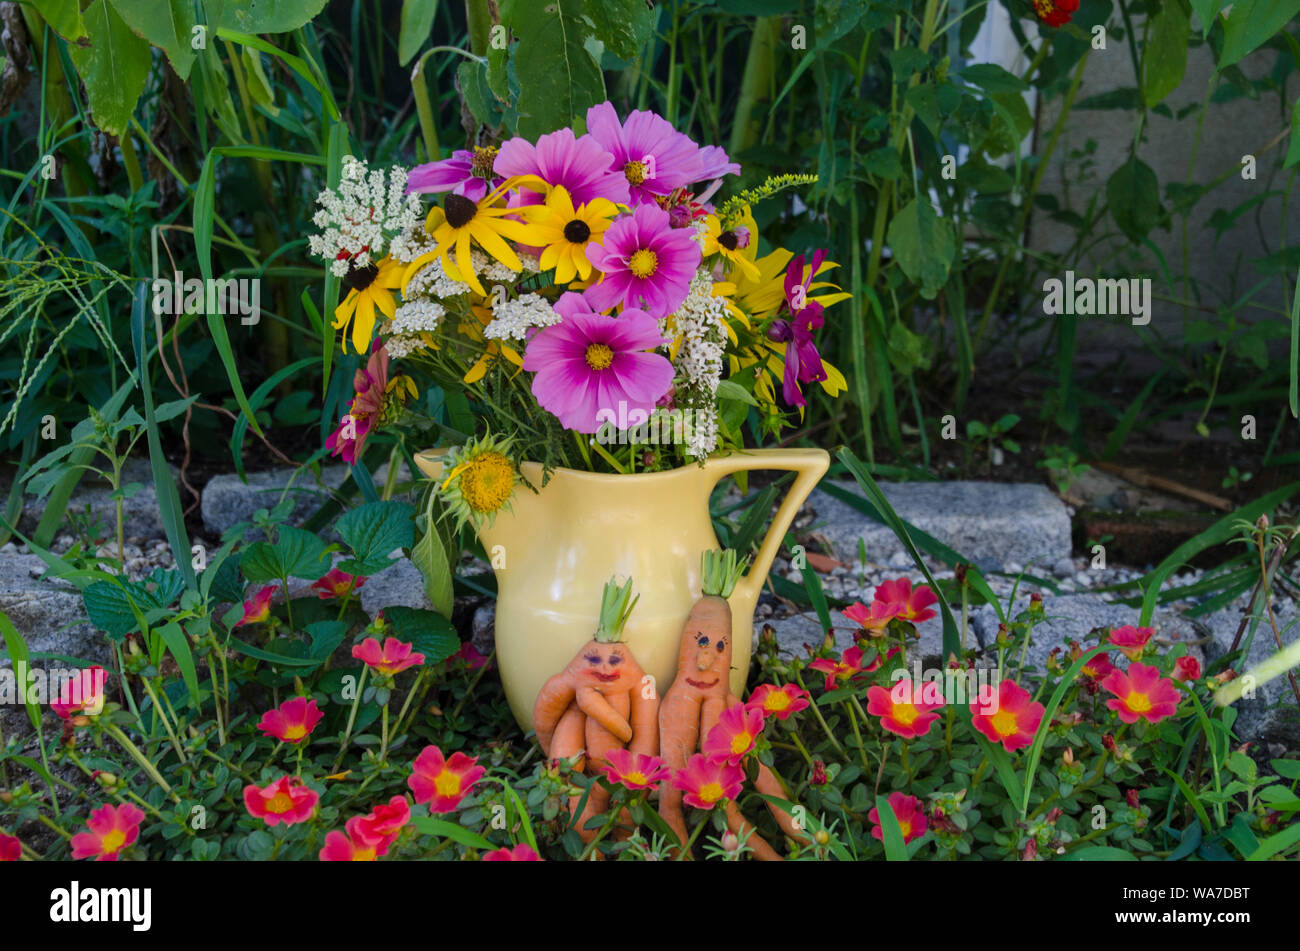 Un maschio e femmina coppia di carote con facce dipinte di stare insieme in un giardino fiorito accanto al vaso di ceramica di fiori colorati, Yarmouth Maine, Stati Uniti d'America Foto Stock